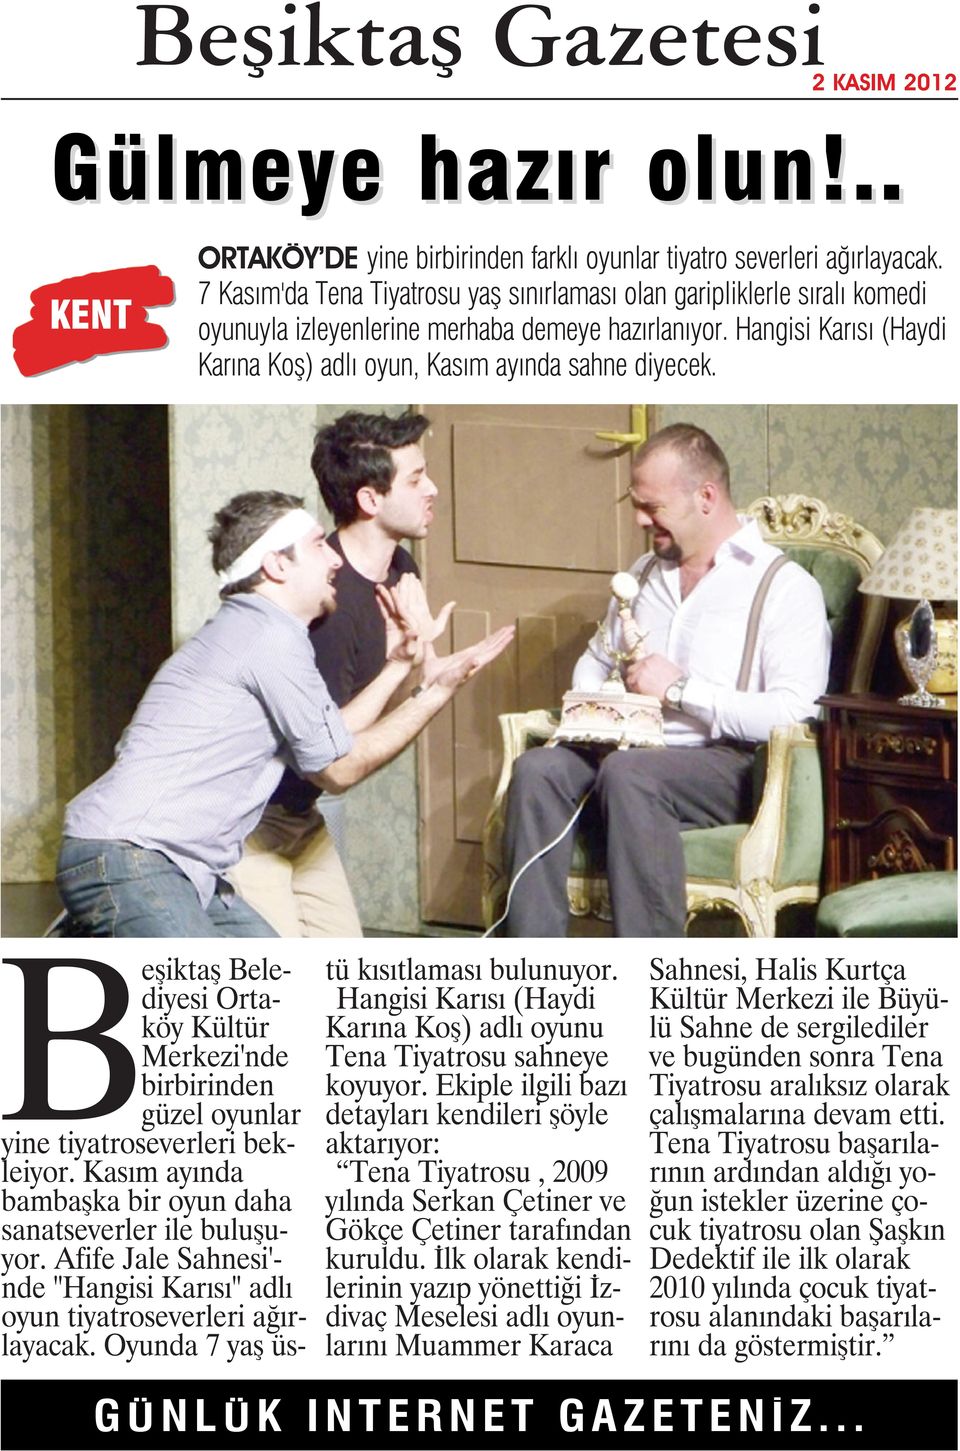 Beşiktaş Belediyesi Ortaköy Kültür Merkezi'nde birbirinden güzel oyunlar yine tiyatroseverleri bekleiyor. Kasım ayında bambaşka bir oyun daha sanatseverler ile buluşuyor.